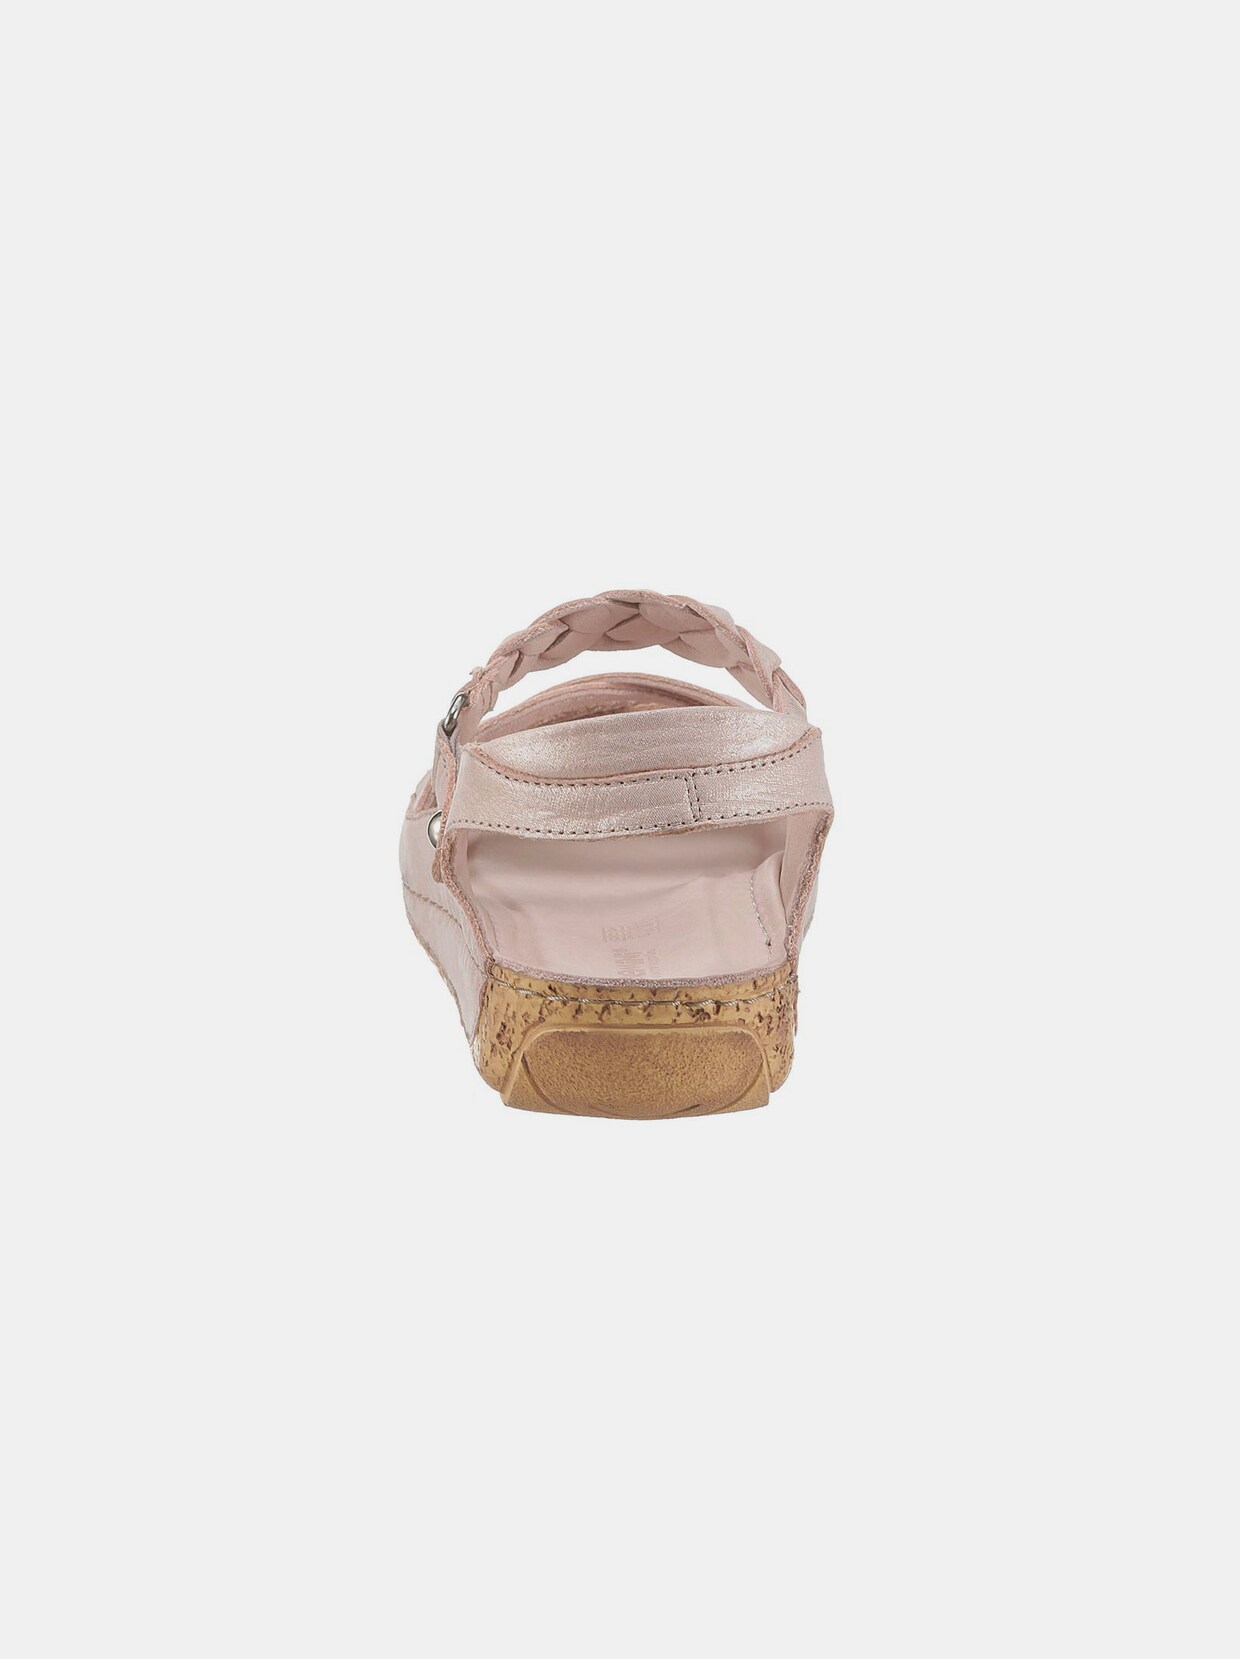 Gemini sandalen - roze